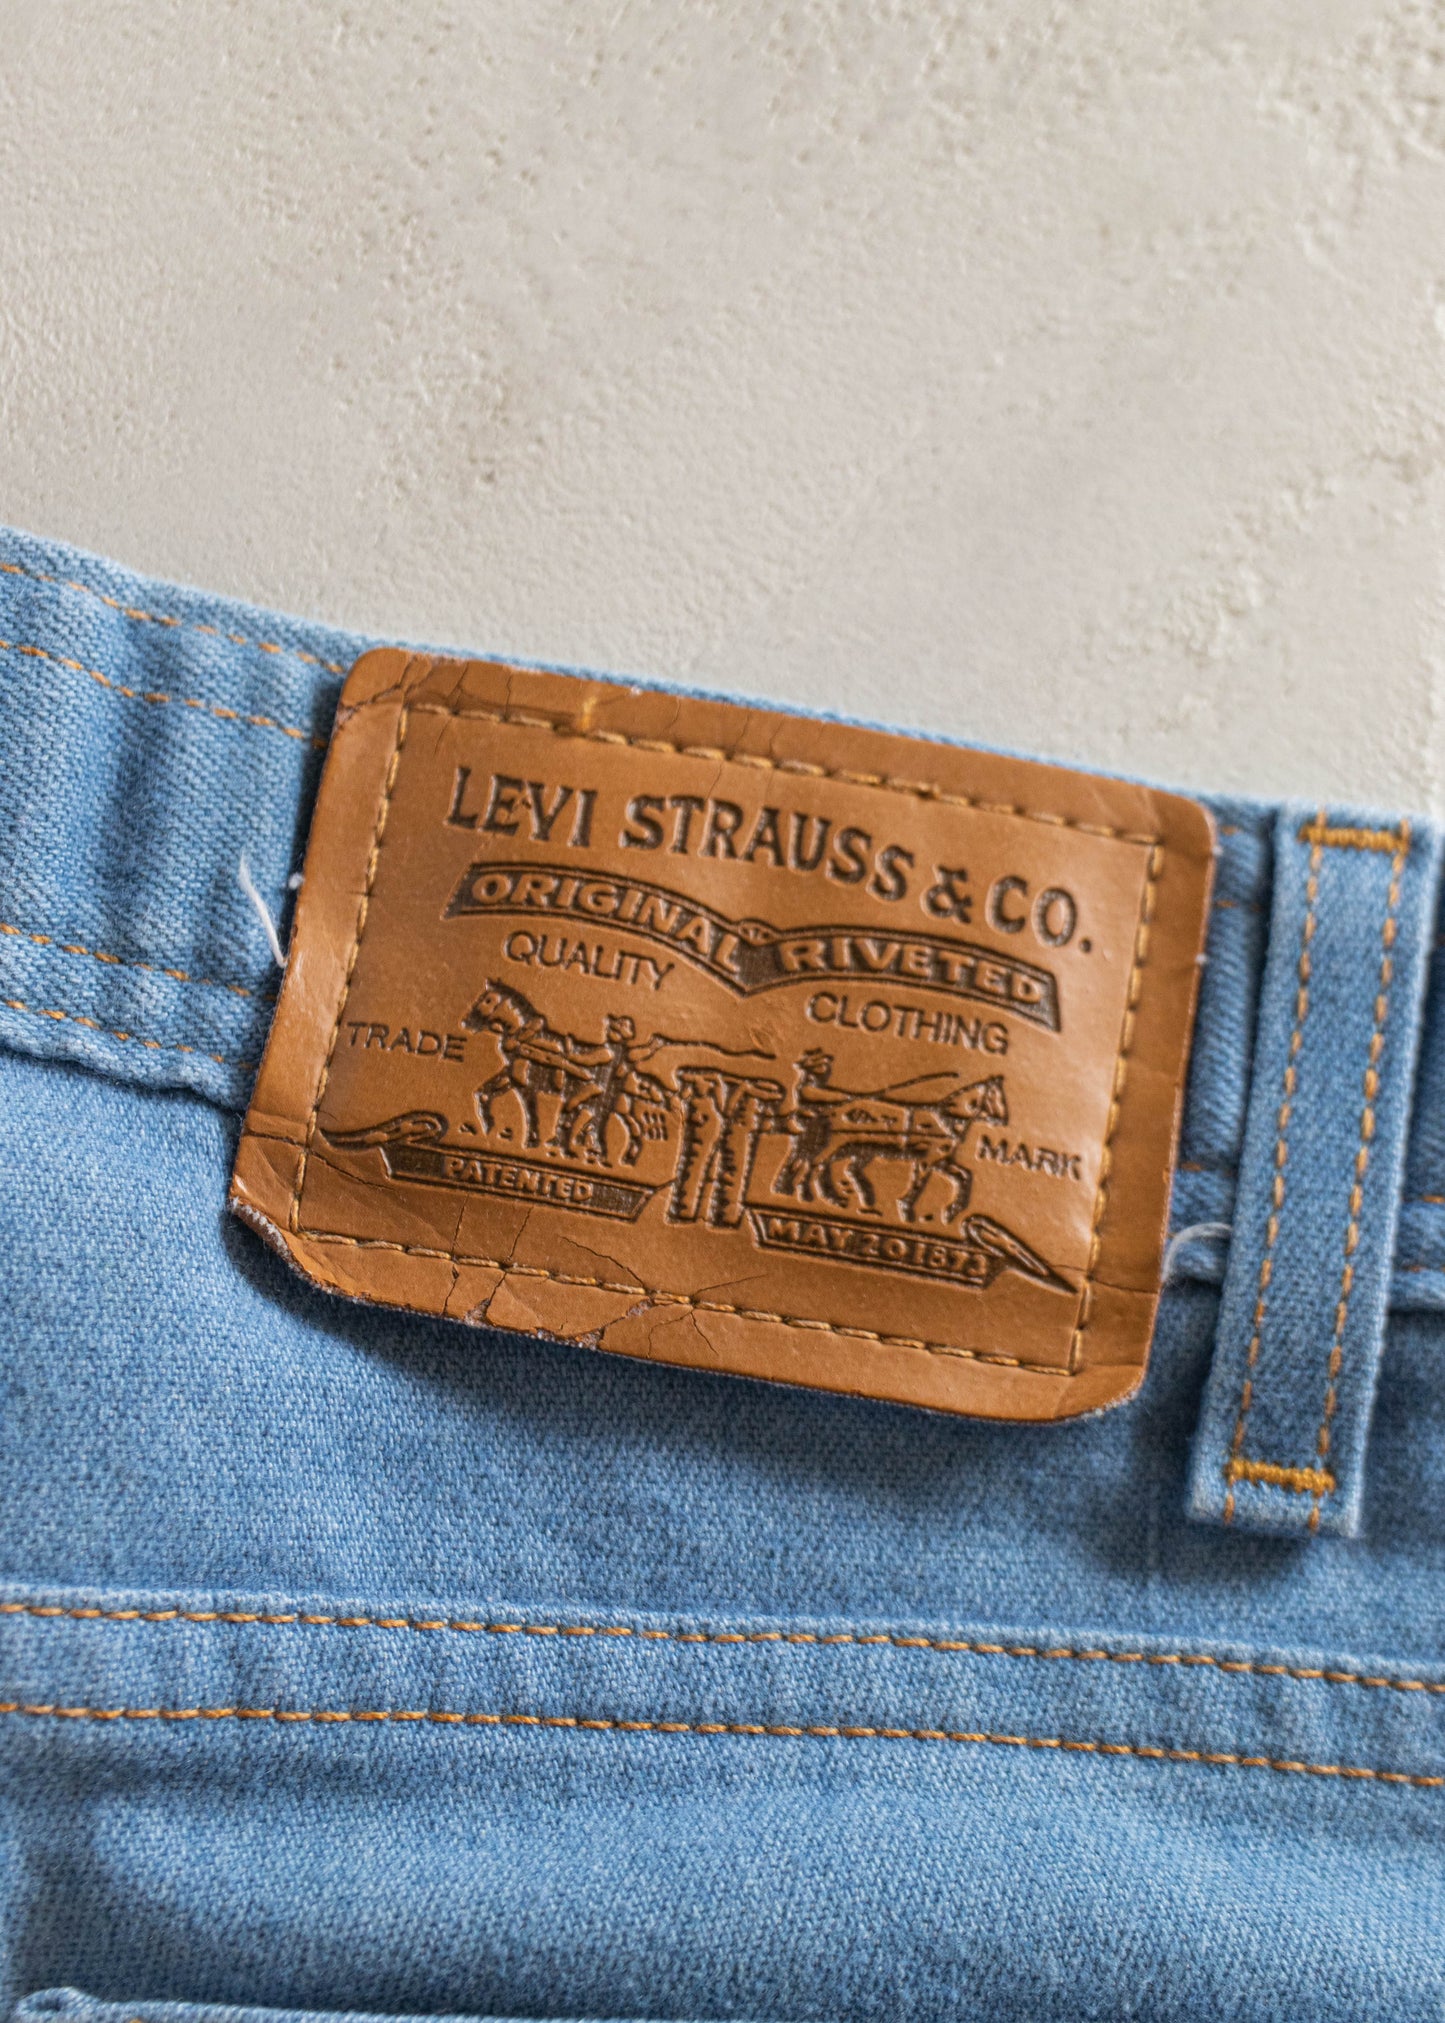 1980s Levi's Midwash Jeans Size Women's 29 Men's 32